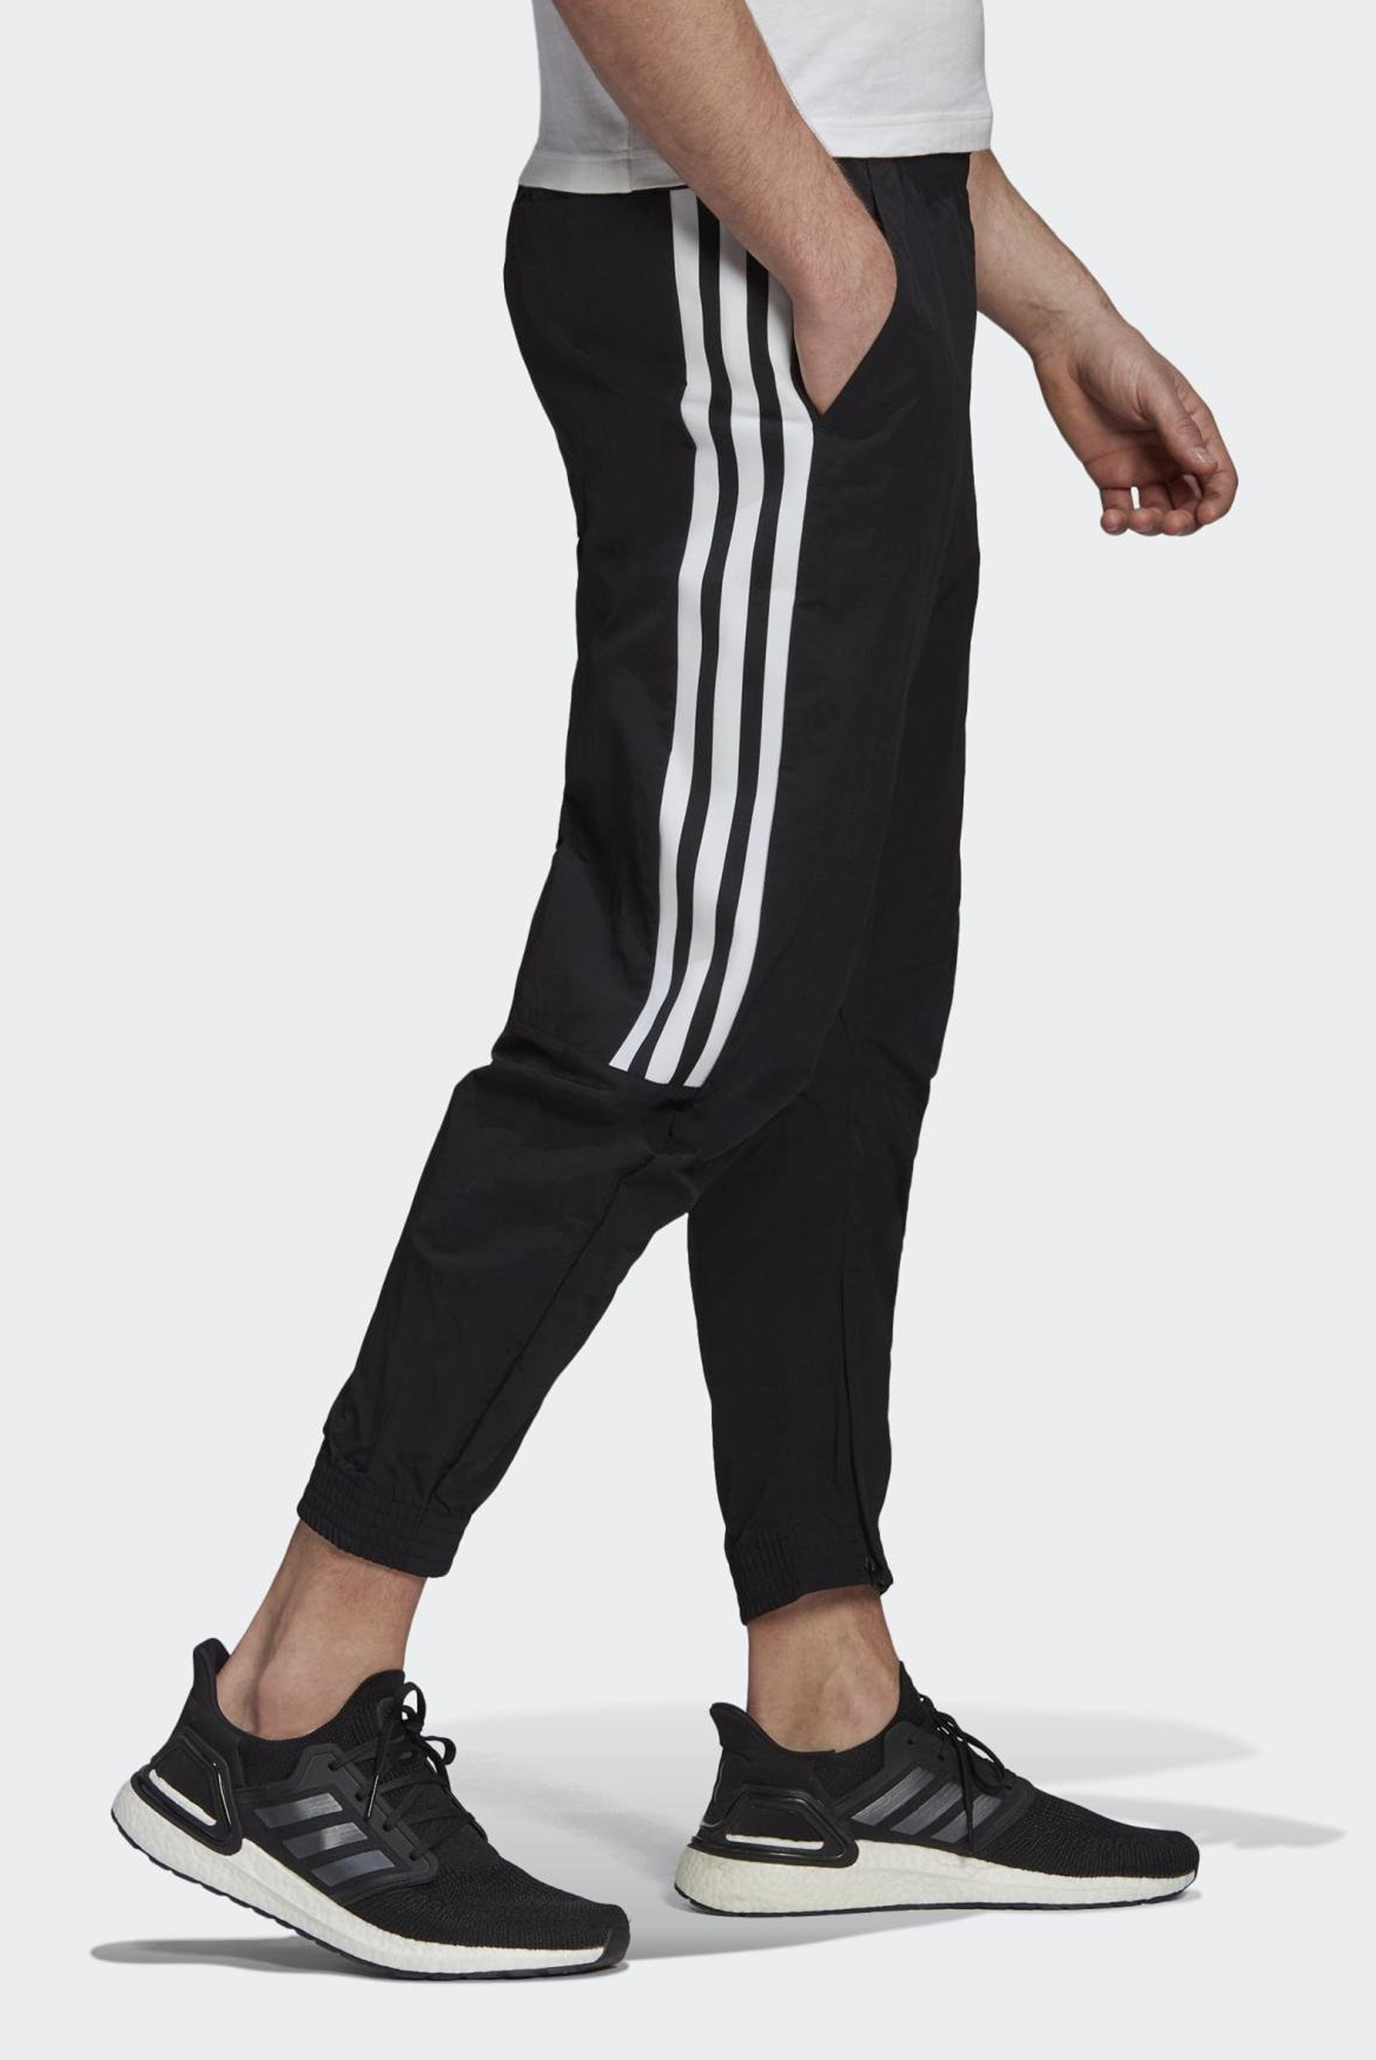 Supermercado Presa Mantenimiento Брюки adidas Sportswear 3-Stripes adidas GM5751 — MD-Fashion